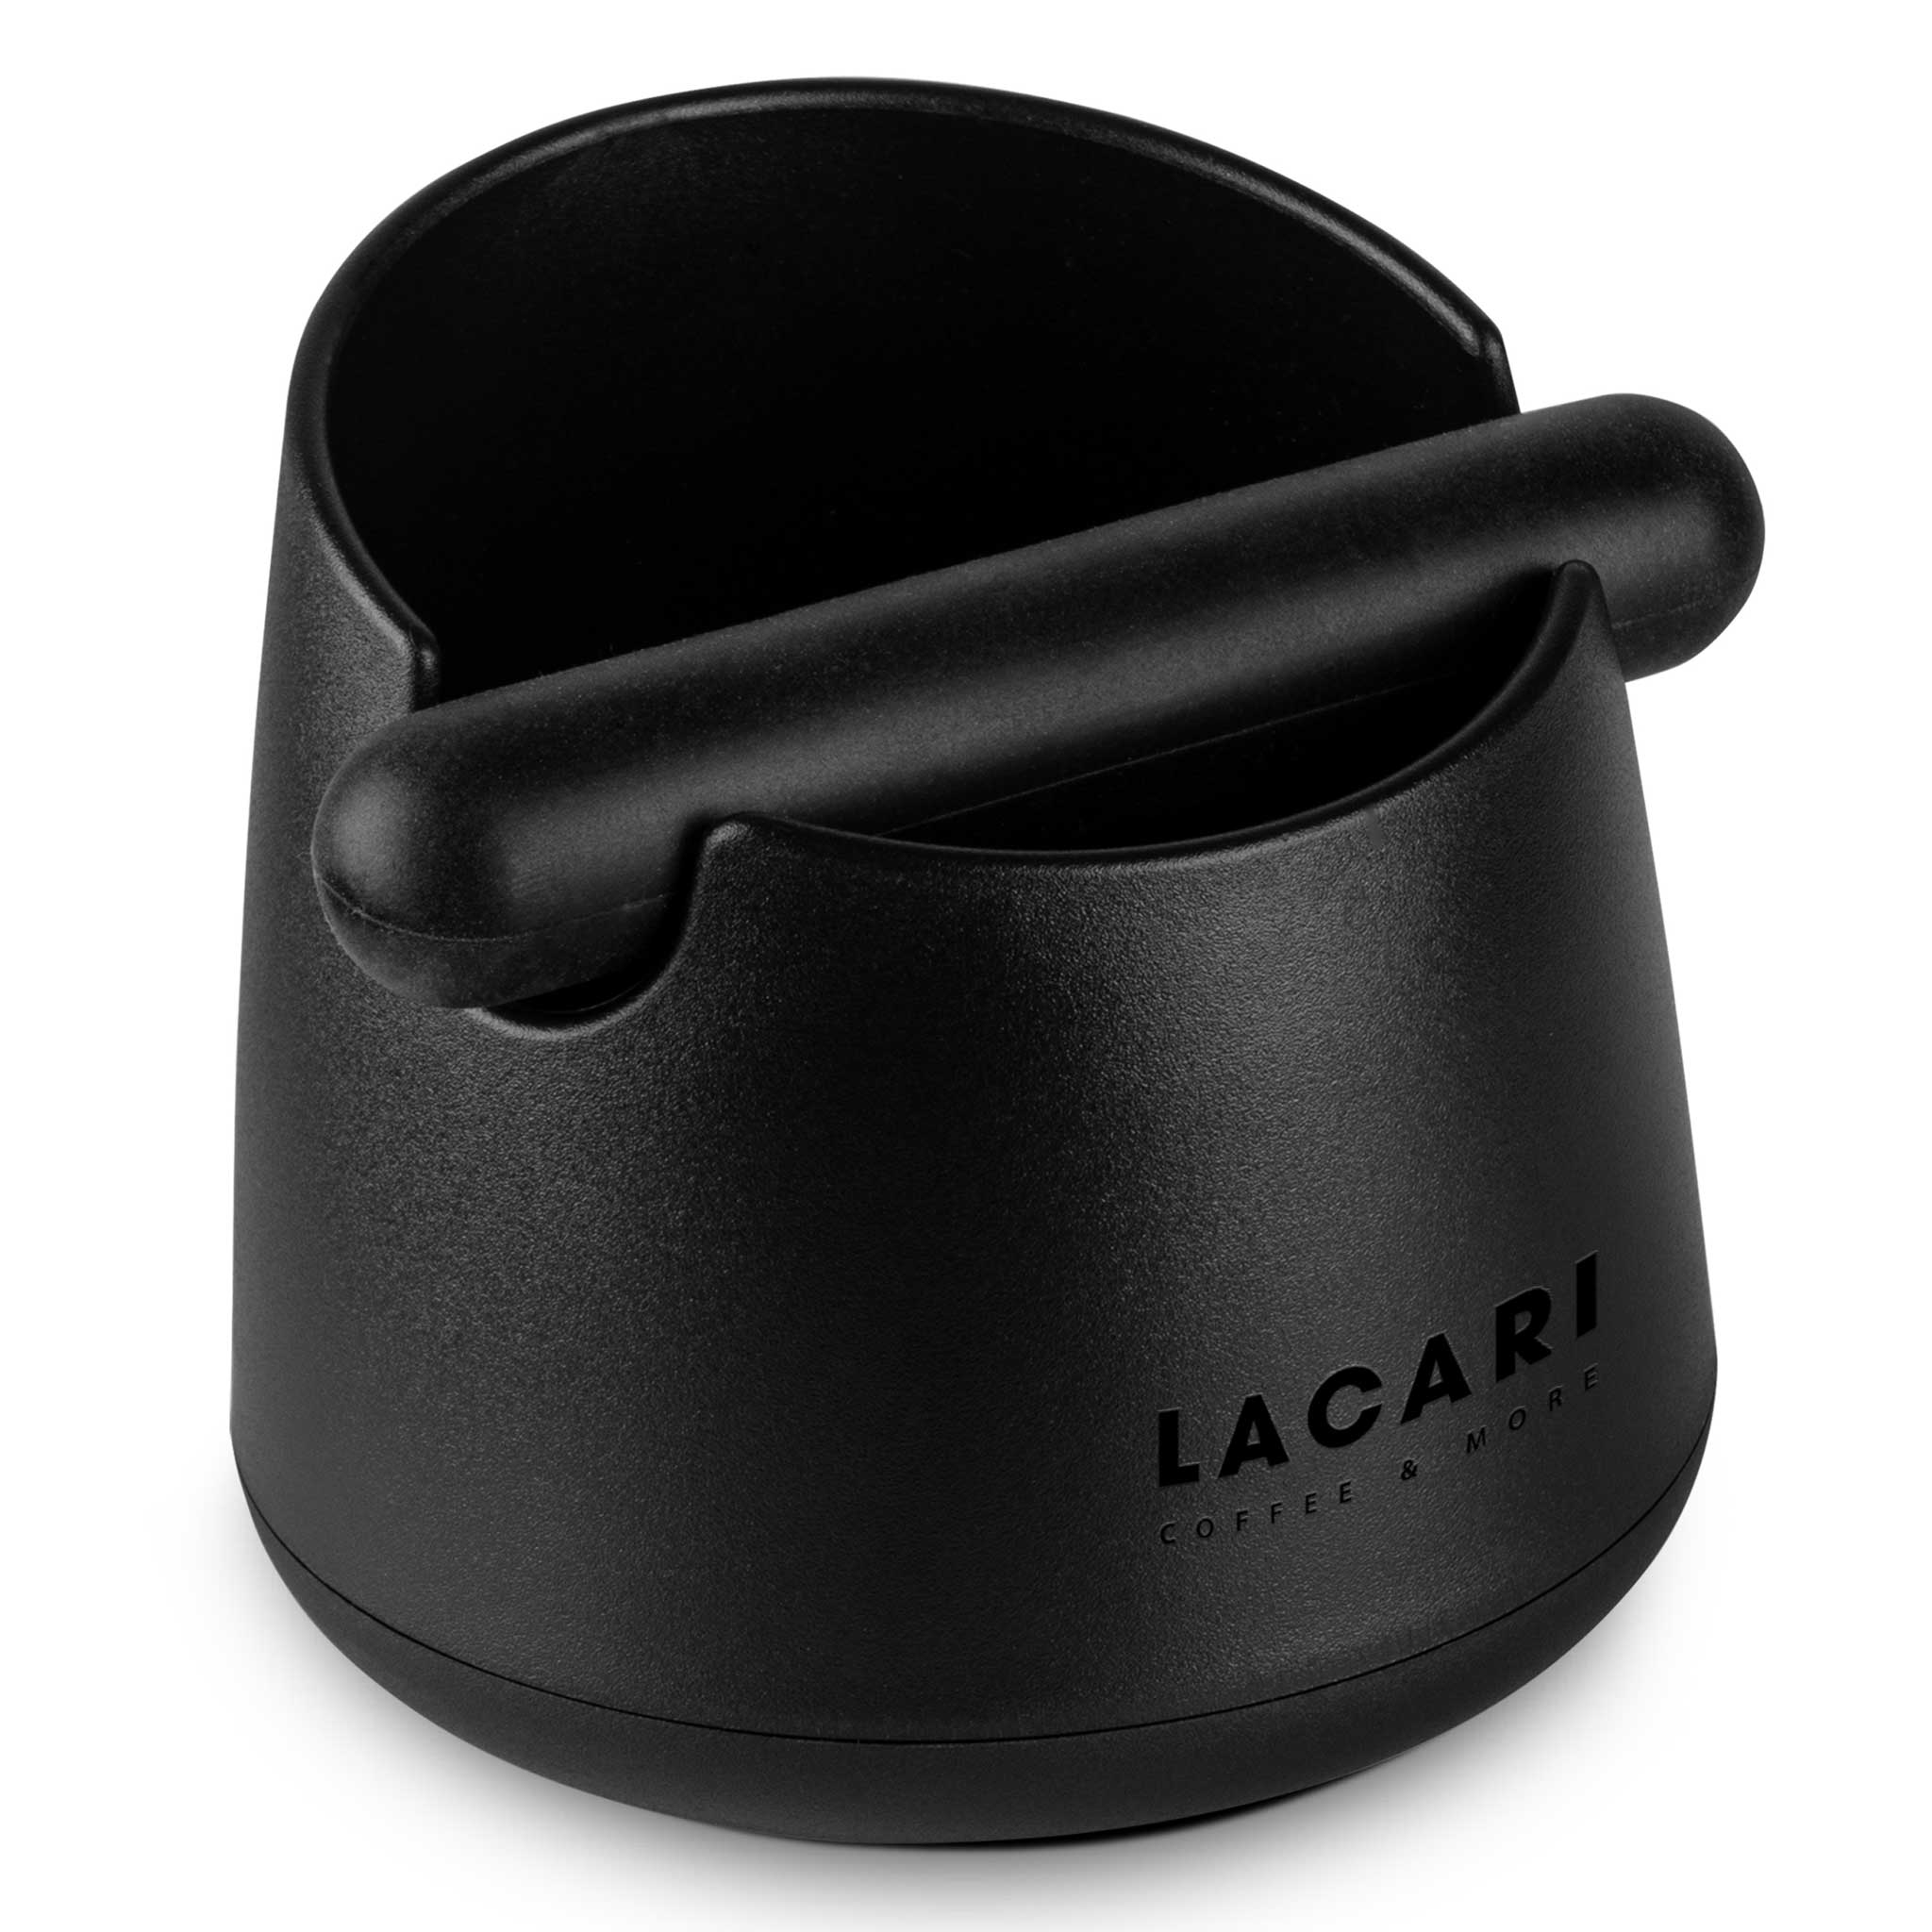 LACARI Abklopfbehälter - Der perfekte Espresso-Genuss aus recyclebarem Kunststoff Zubehör für Kaffee- & Espressomaschinen Lacari 